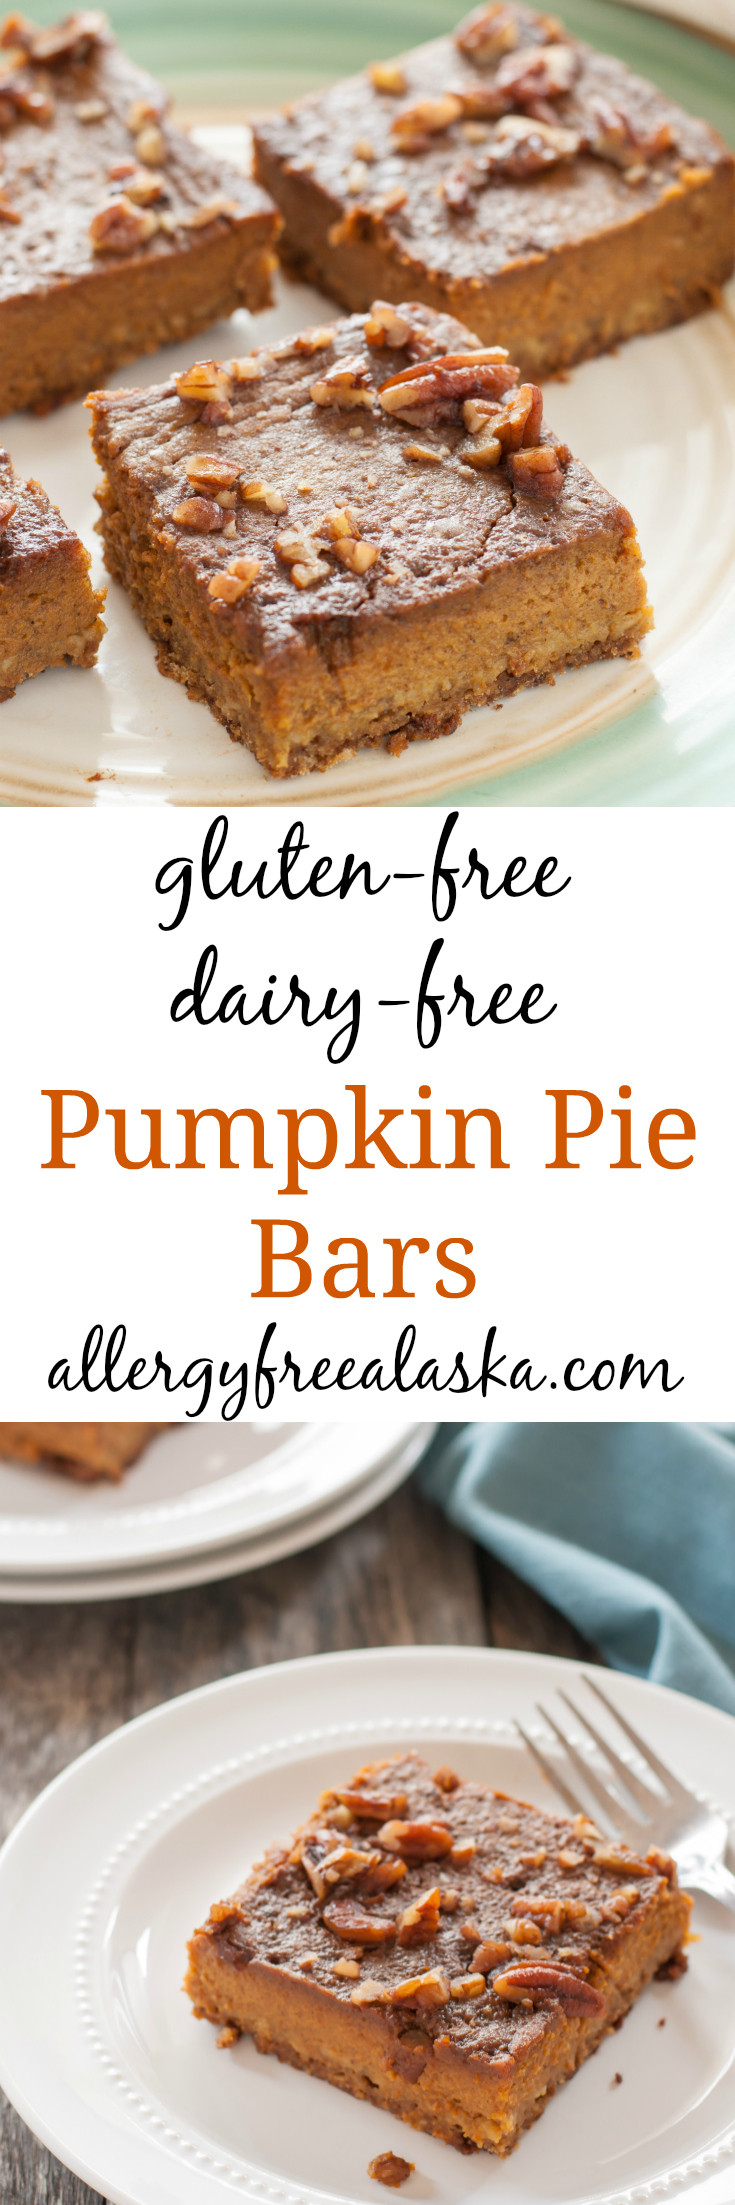 Dairy Free Pie Recipes
 gluten free dairy free pumpkin pie bar recipe from allergy